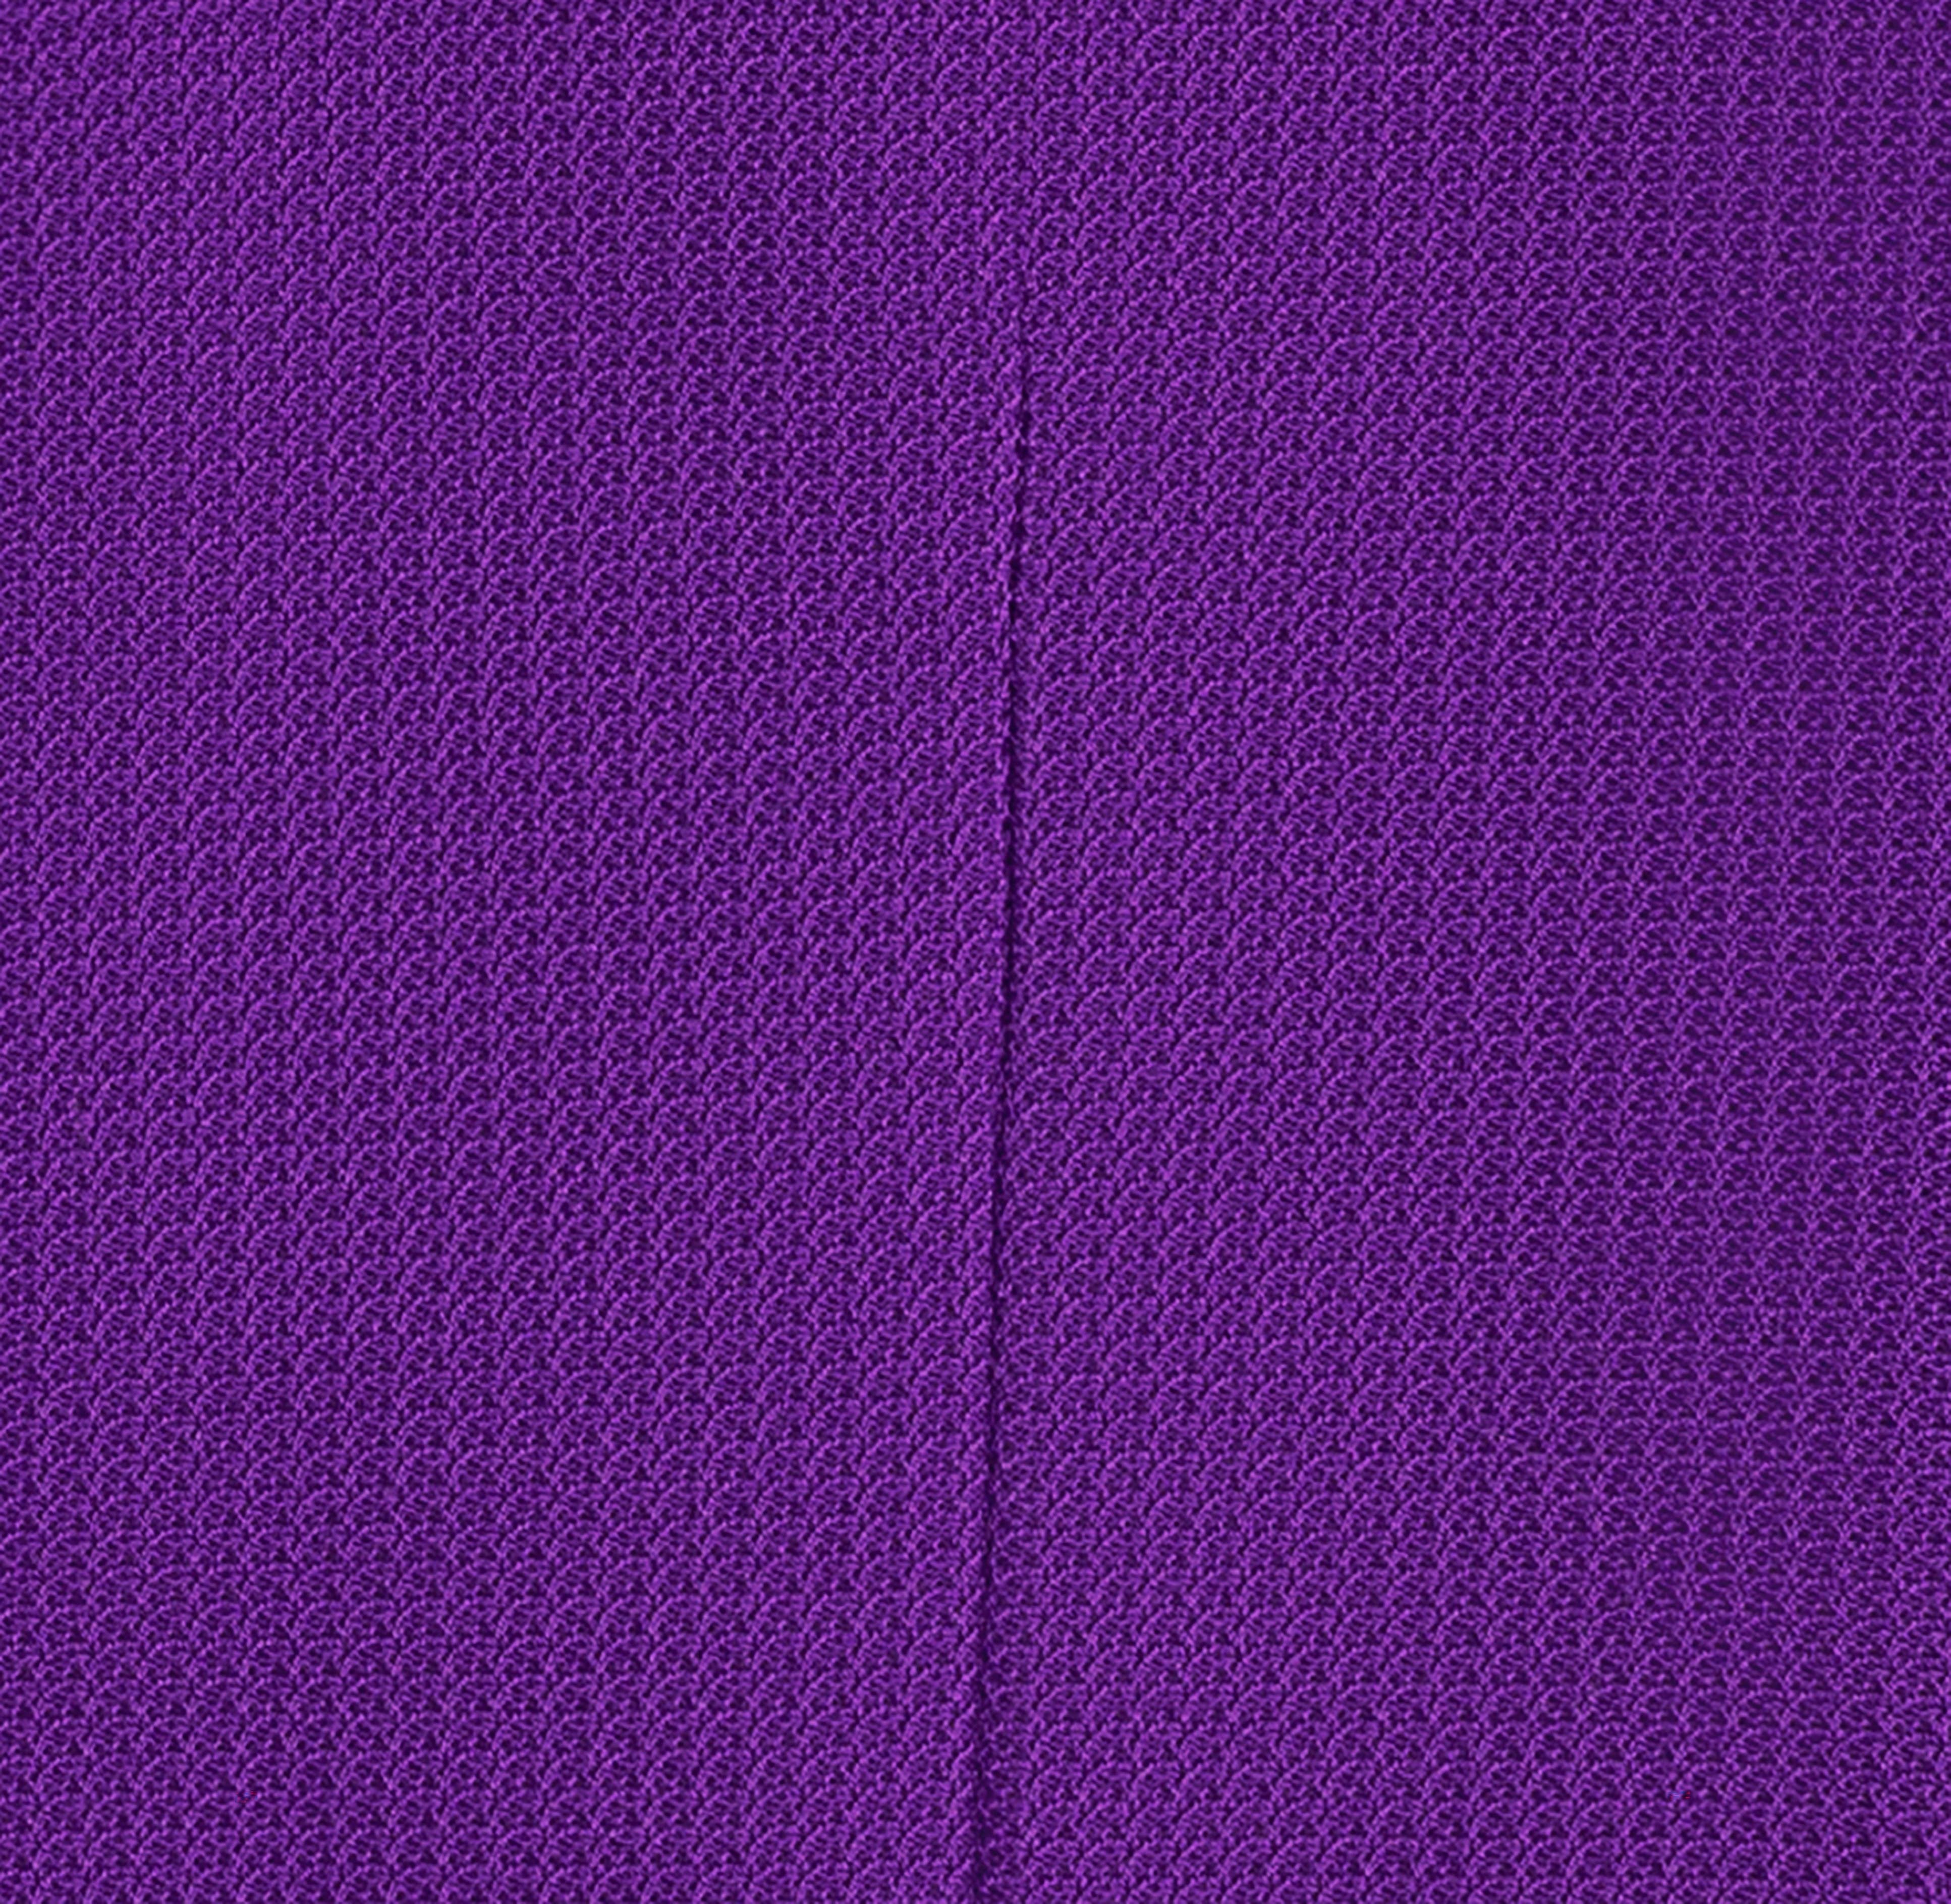 Purple Cotton Vest